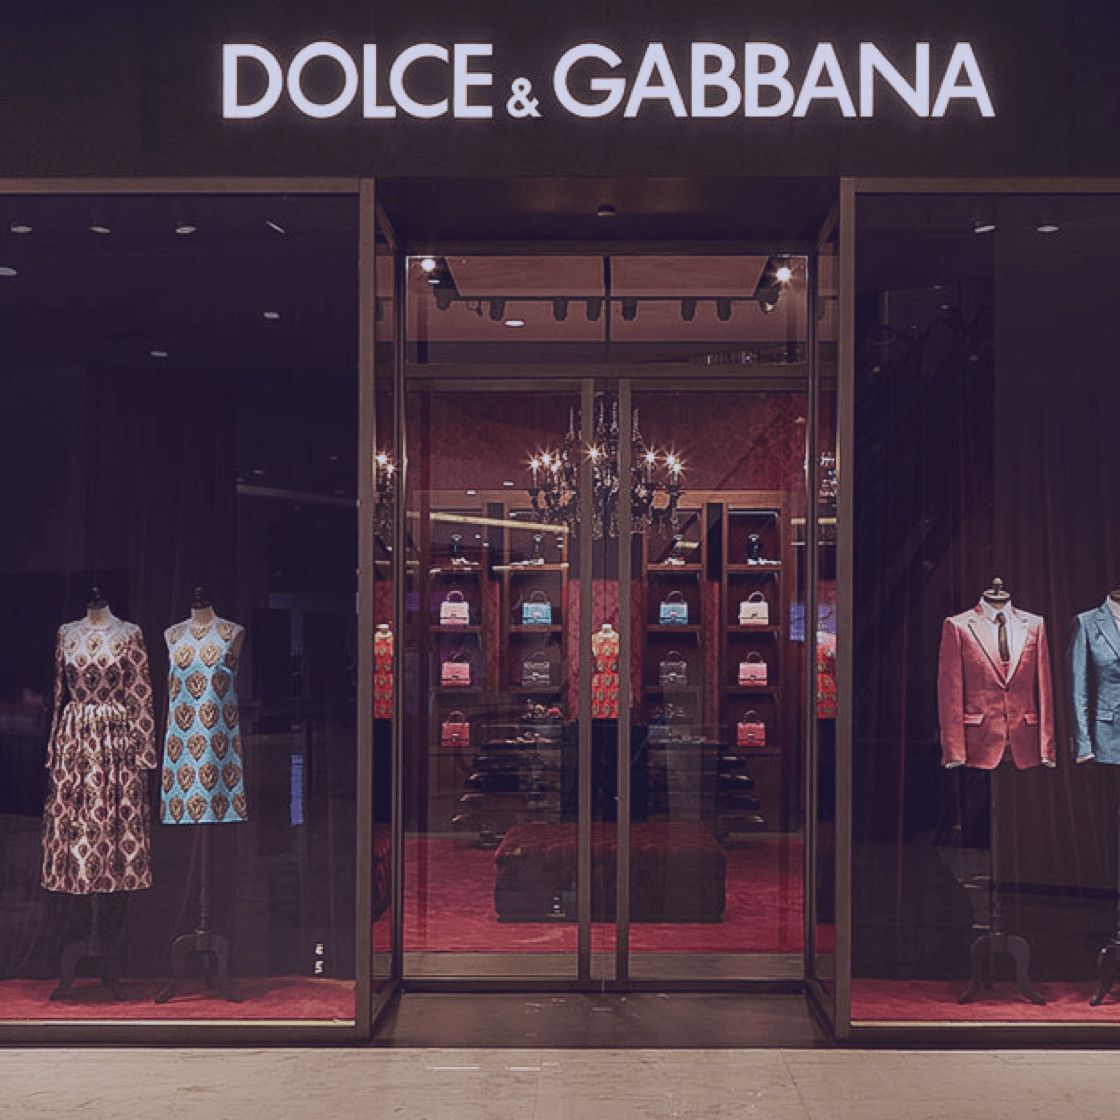 Dolce & Gabbana - Case Study